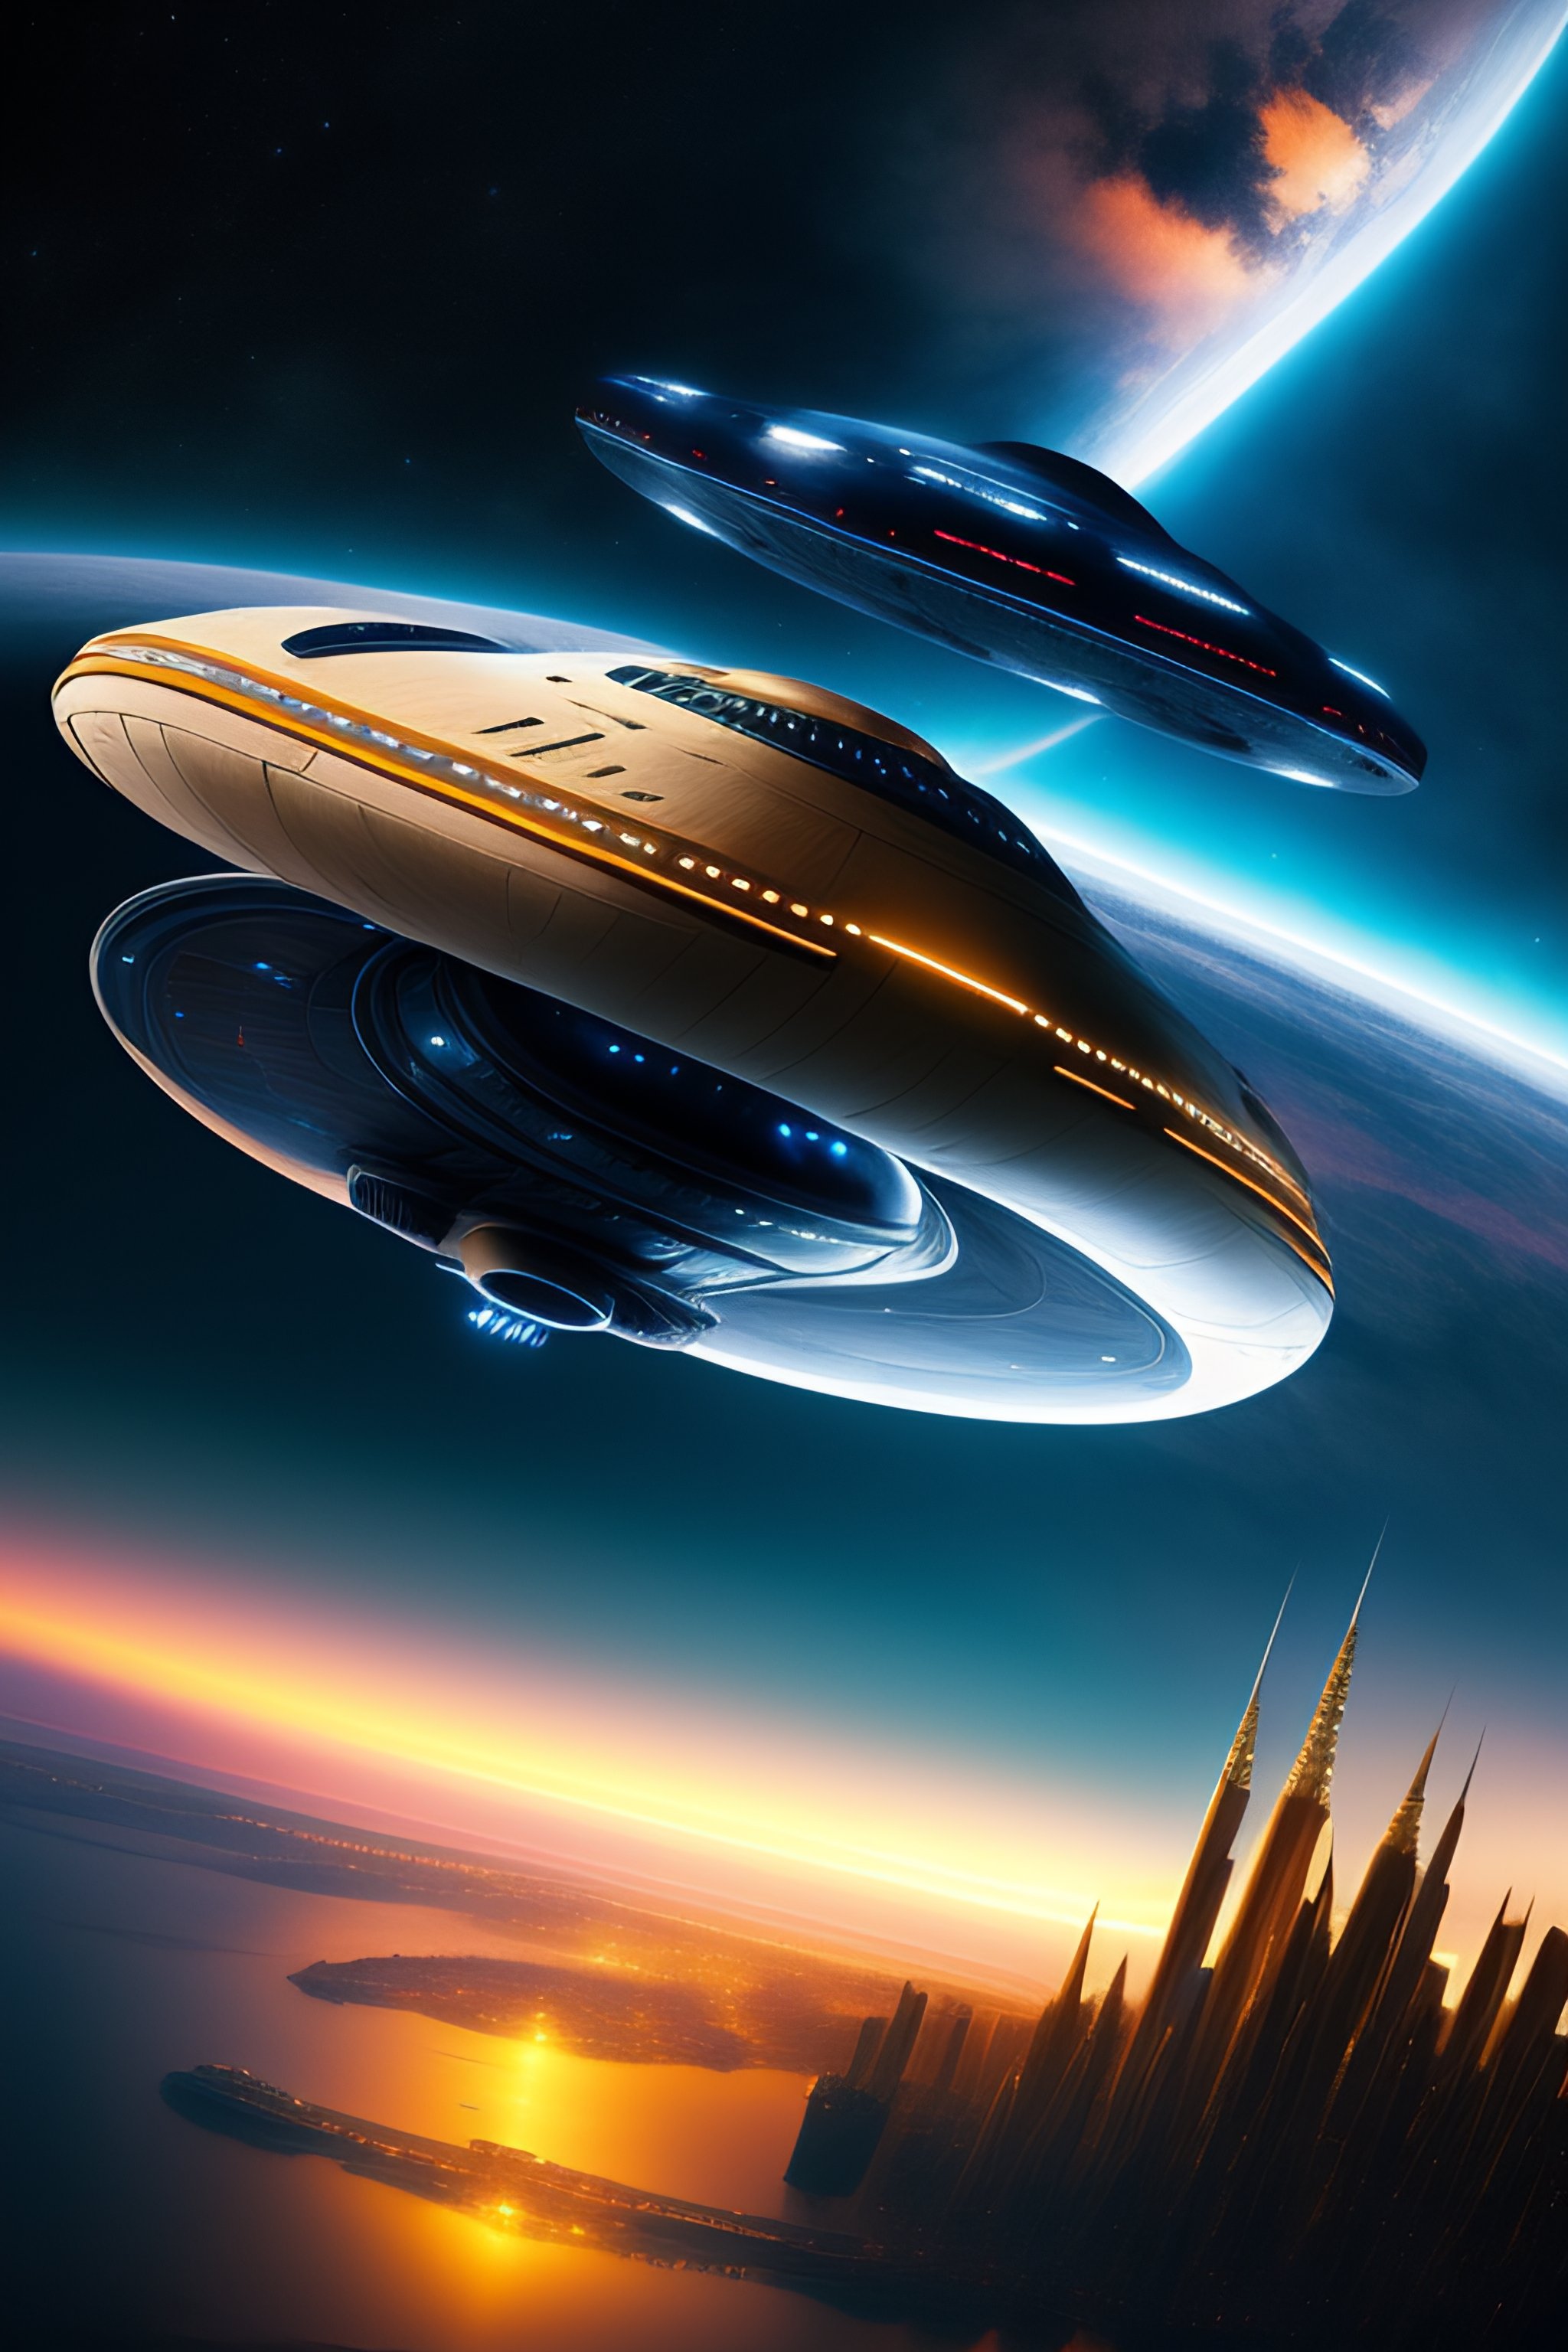 star trek enterprise wallpaper